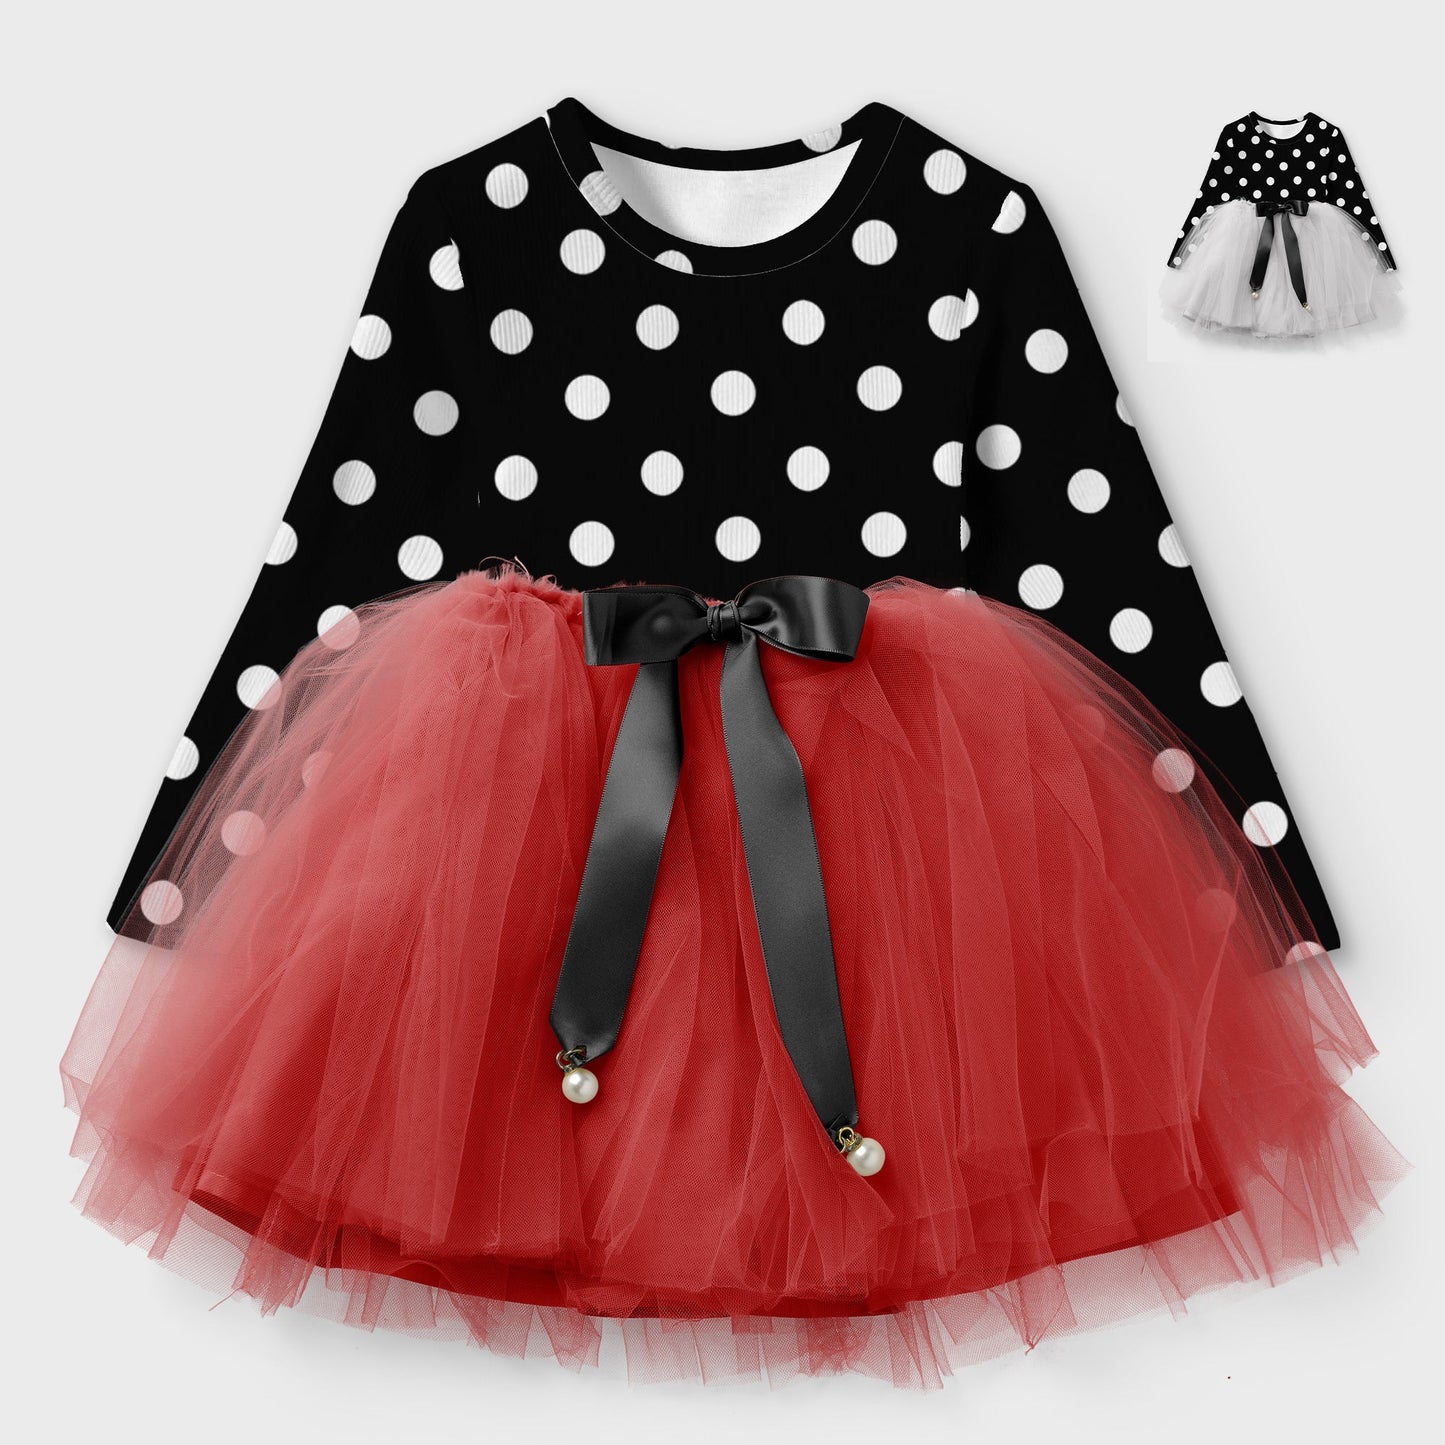 Girl & Toddler Polka Dot Net Frock Dress (Winter Stuff)